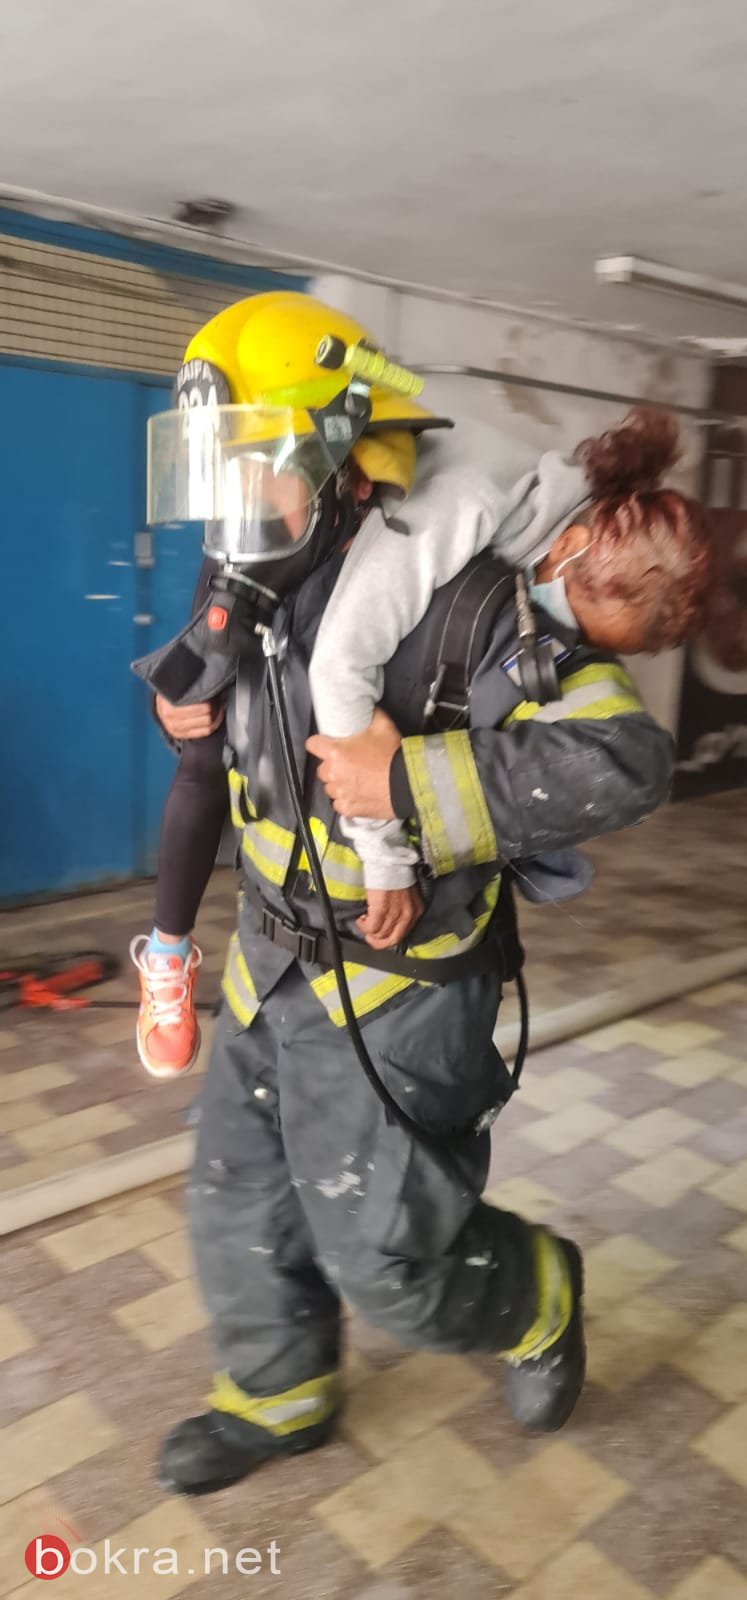 حيفا: اندلاع حريق داخل مبنى، وتخليص أم وأطفالها الثلاثة-4